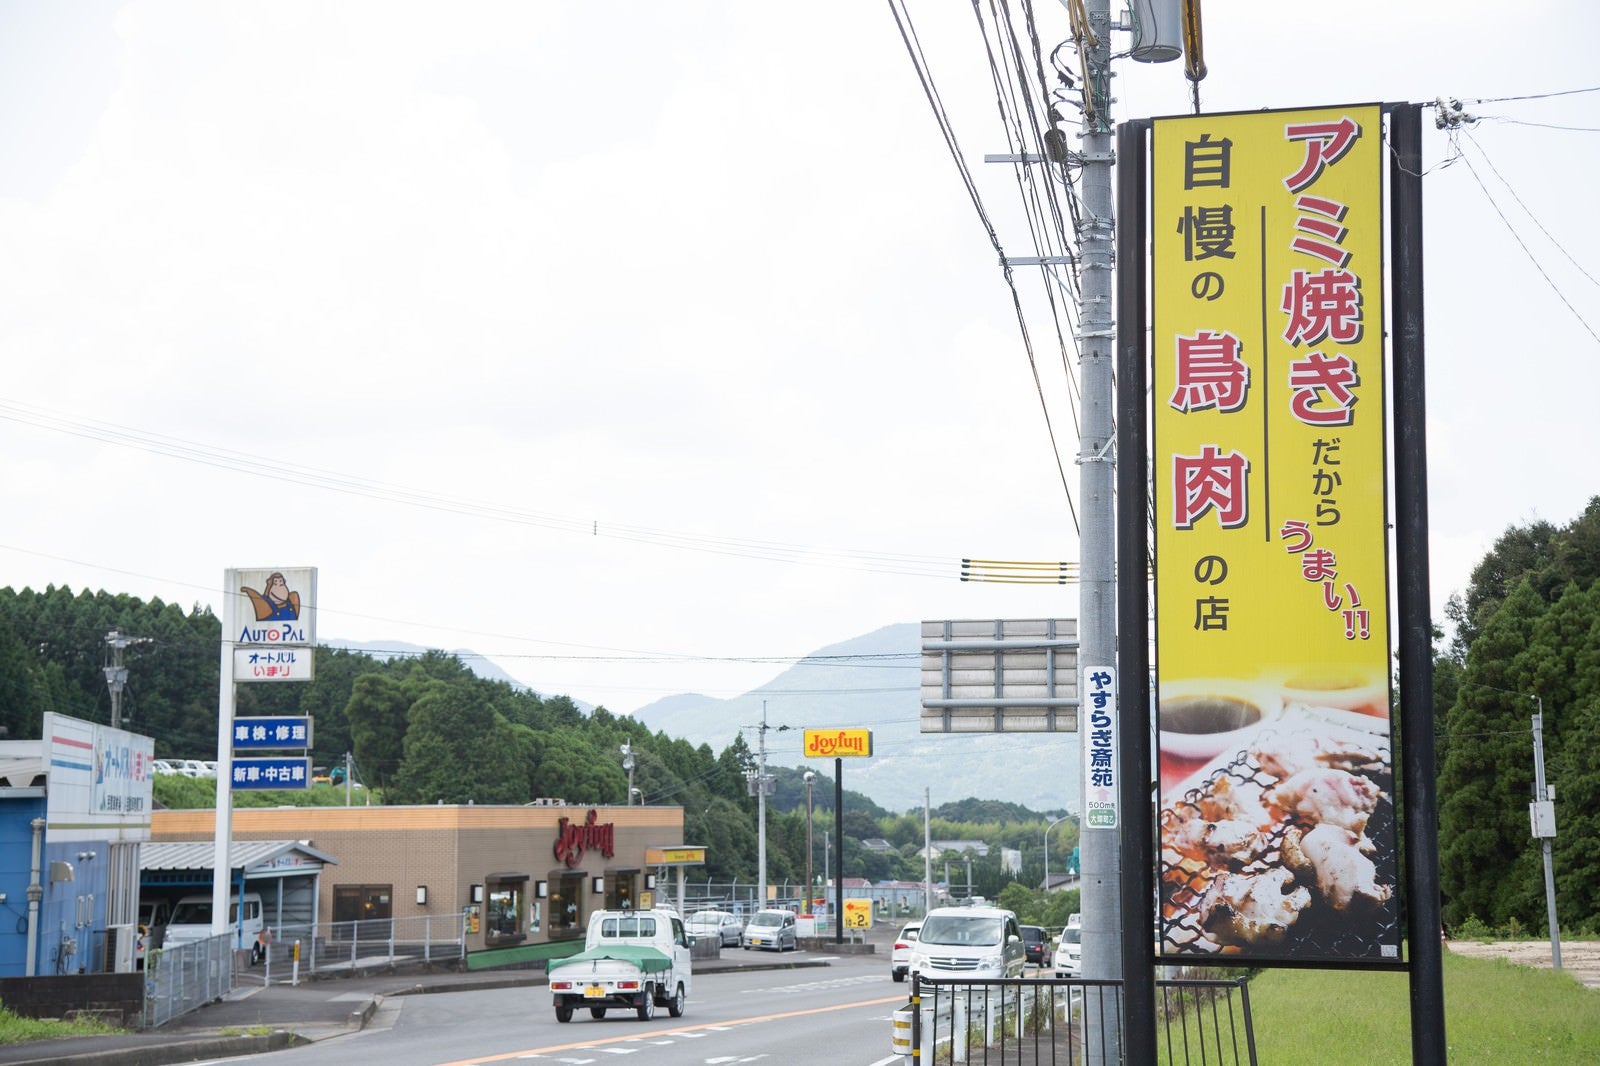 「伊万里市の人気店ドライブイン鳥の看板と道路」の写真